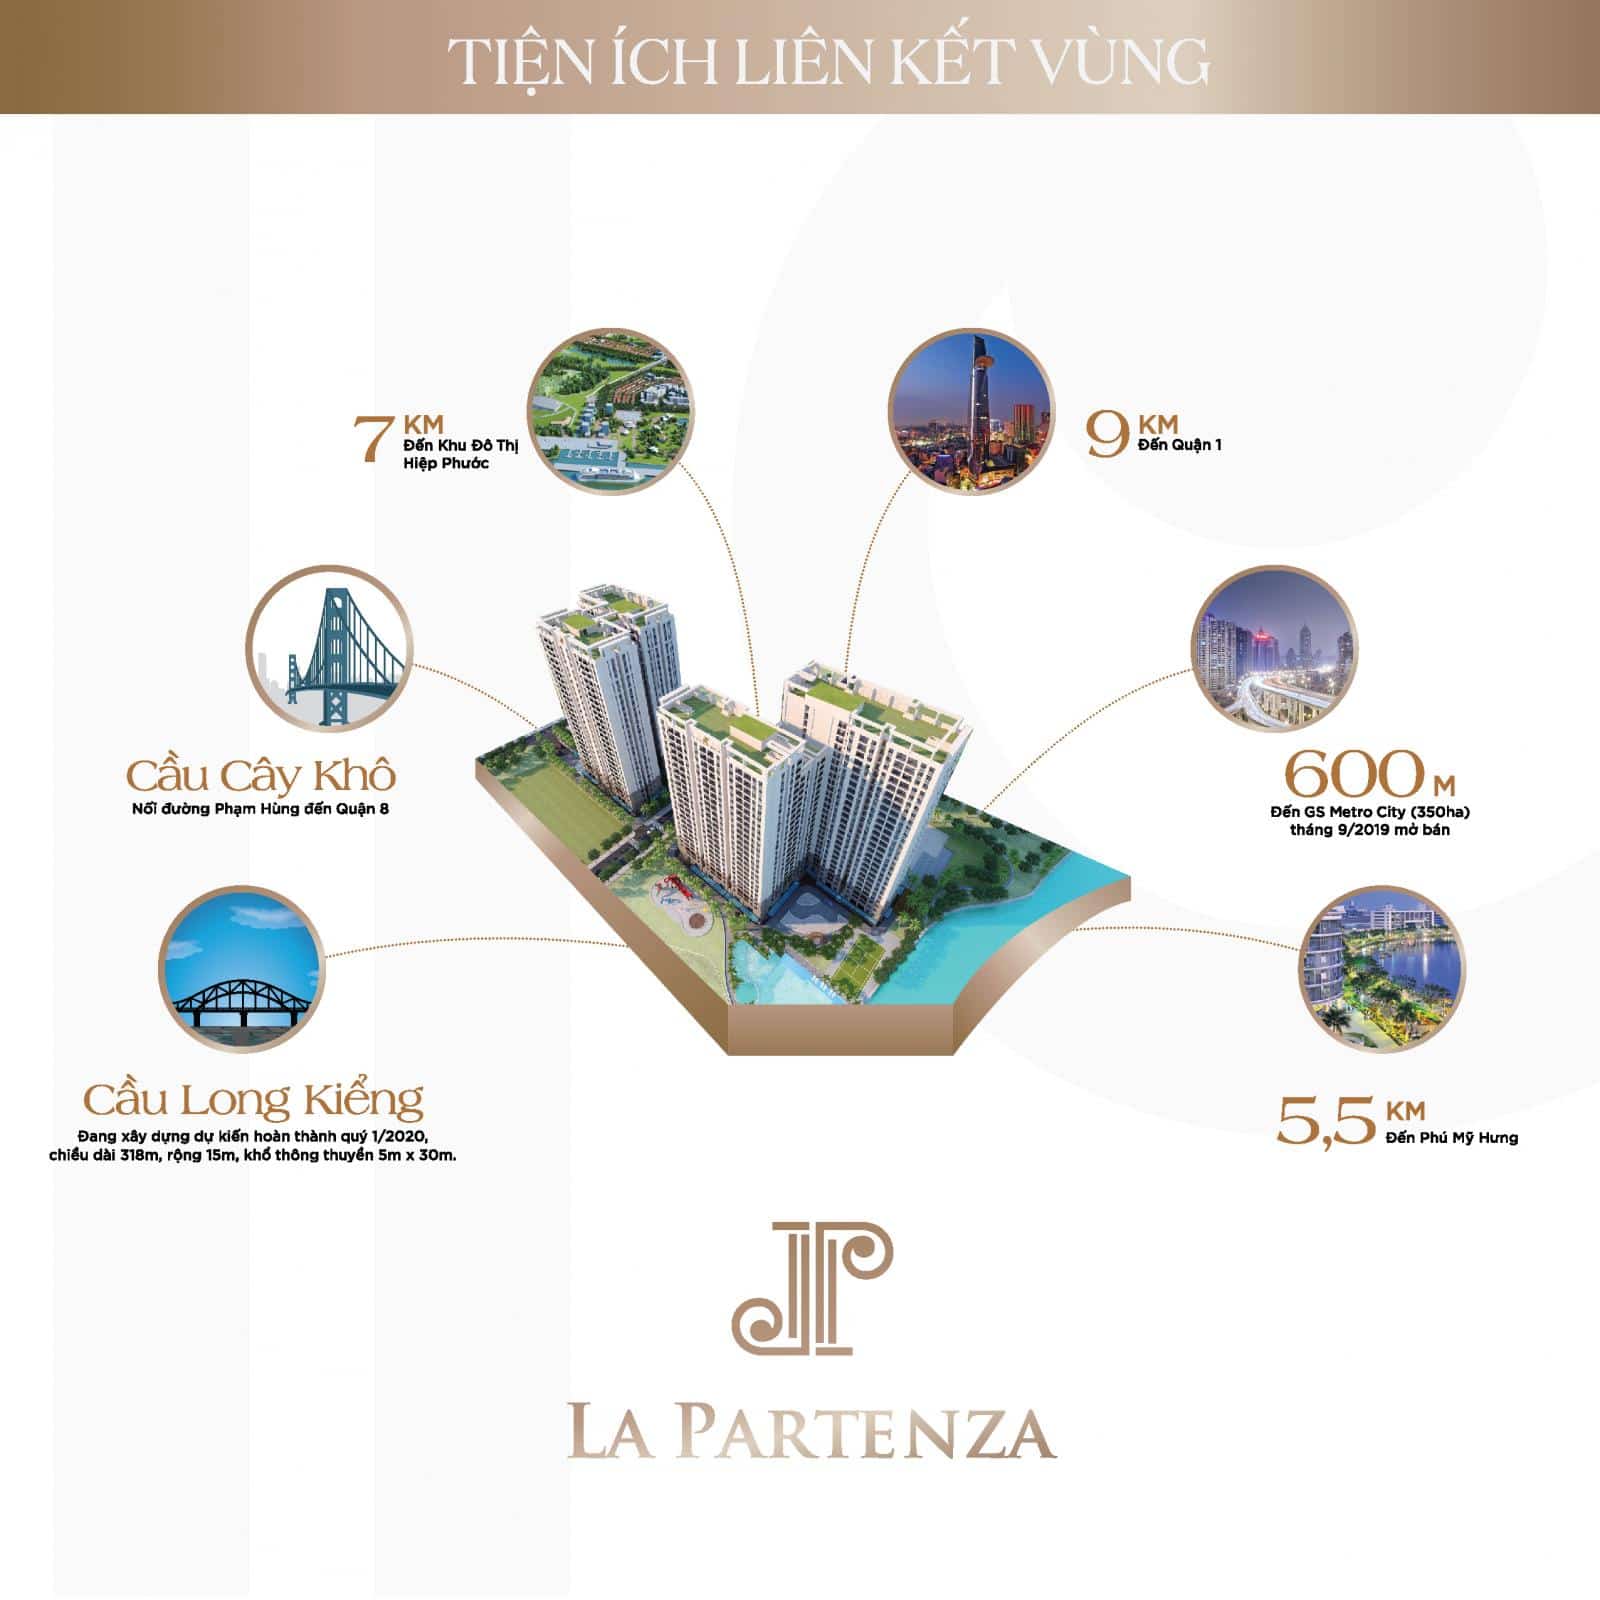 Vị Trí Vàng của La Partenza Nhà Bè